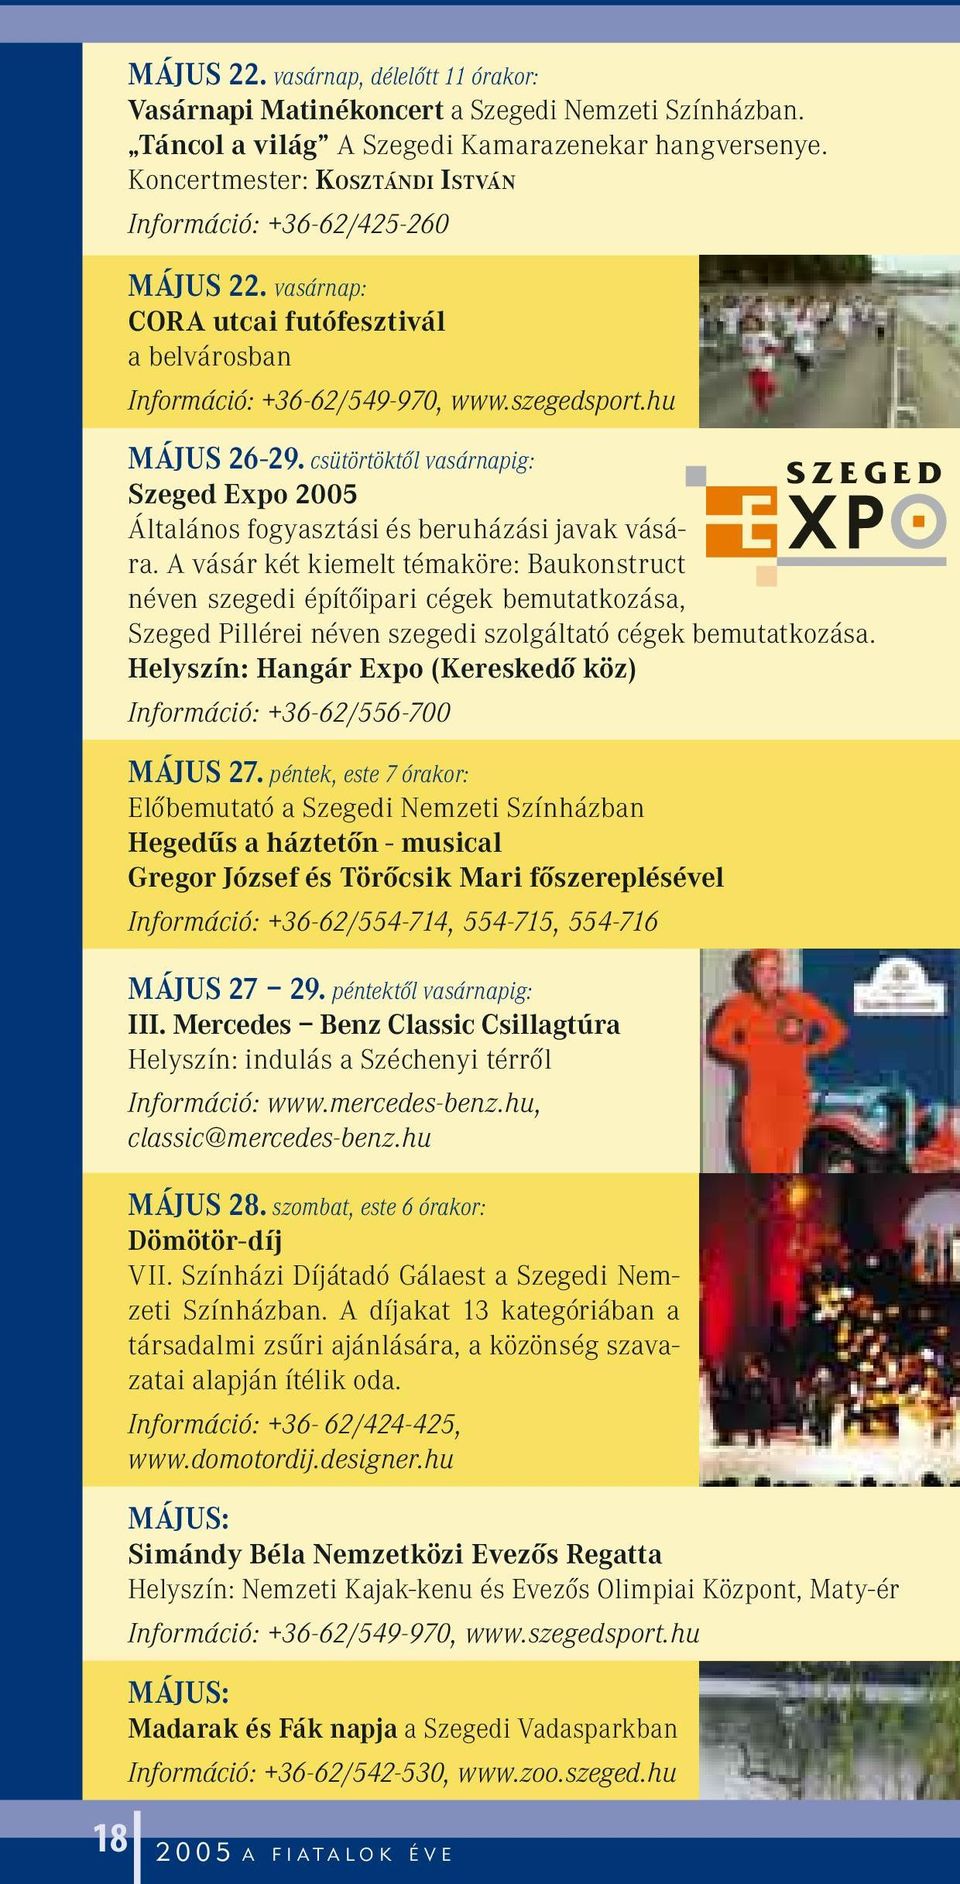 csütörtöktôl vasárnapig: Szeged Expo 2005 Általános fogyasztási és beruházási javak vására.